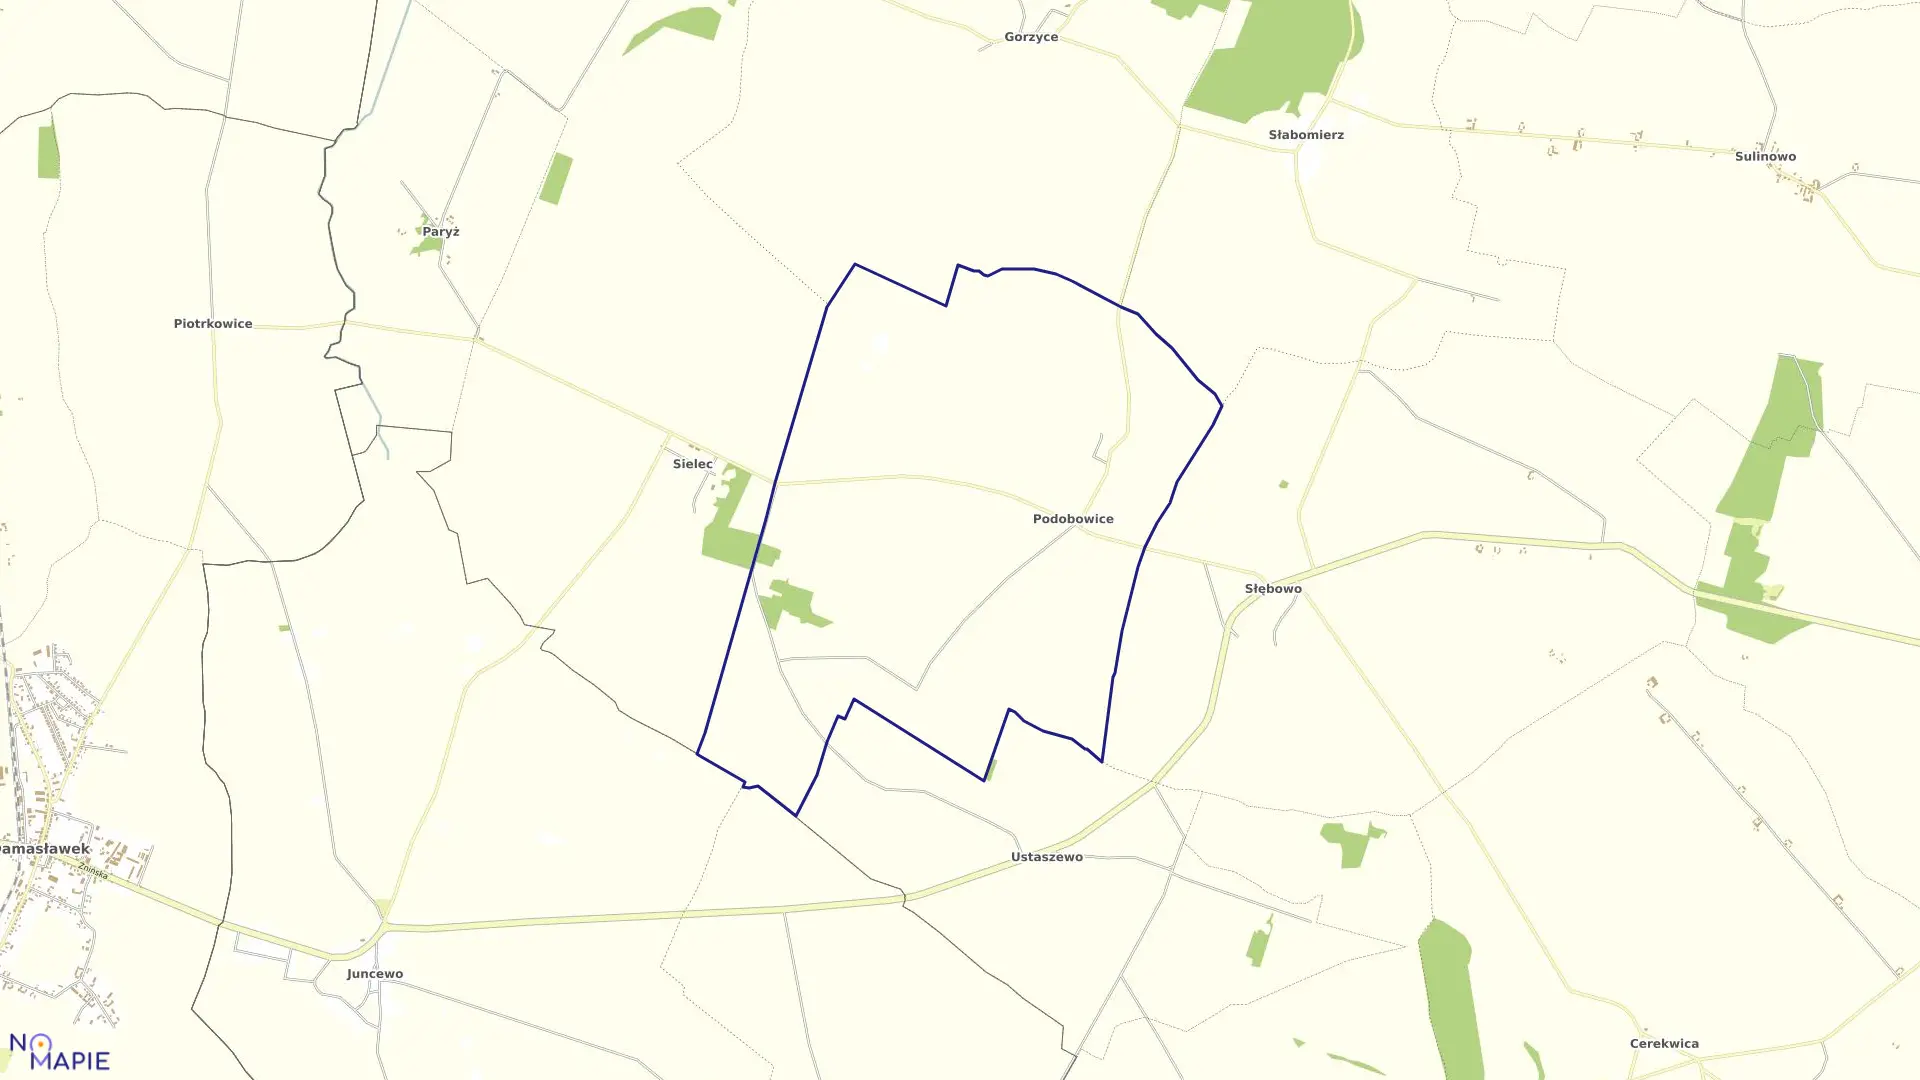 Mapa obrębu Podobowice w gminie Żnin